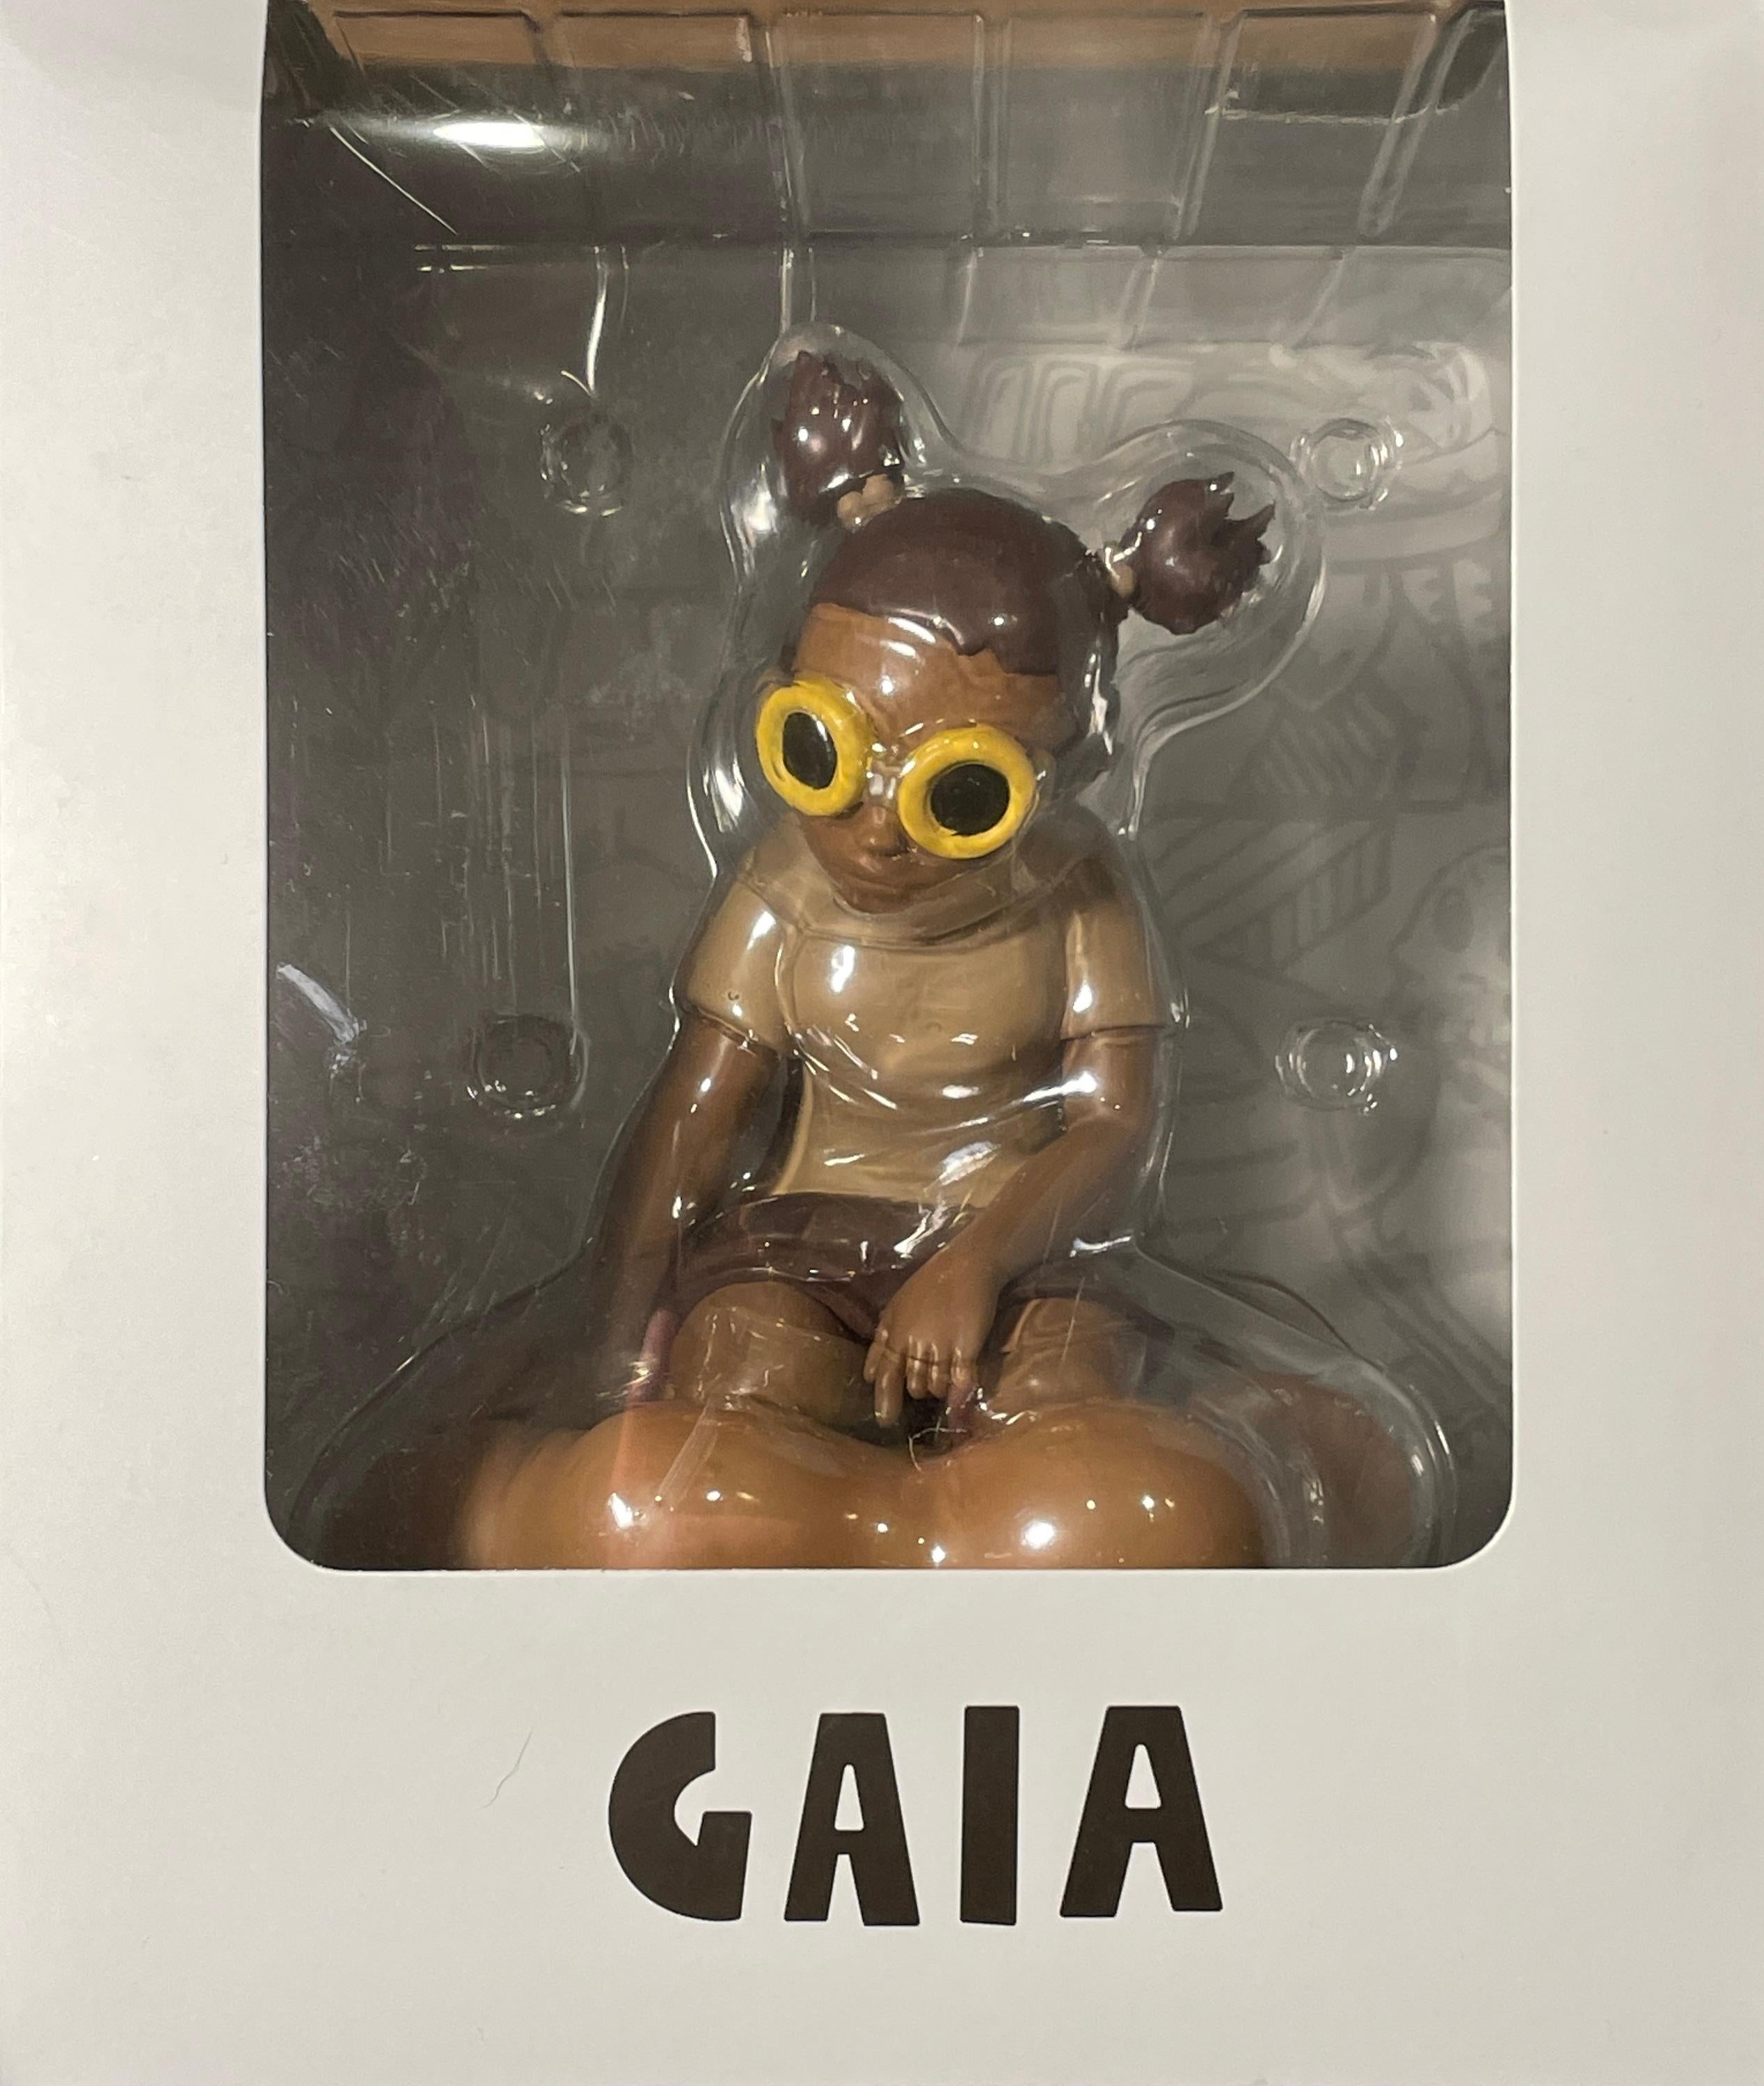 Hebru Brantley „Gaia“ Figur MCA Exklusiv

Hebru Brantley
Gaia Figur - Sepia
Sepia-Farbvariante exklusiv bei MCA

7,5" H x 5,5" B x 5,5" T
Auflage von 250 Stück

